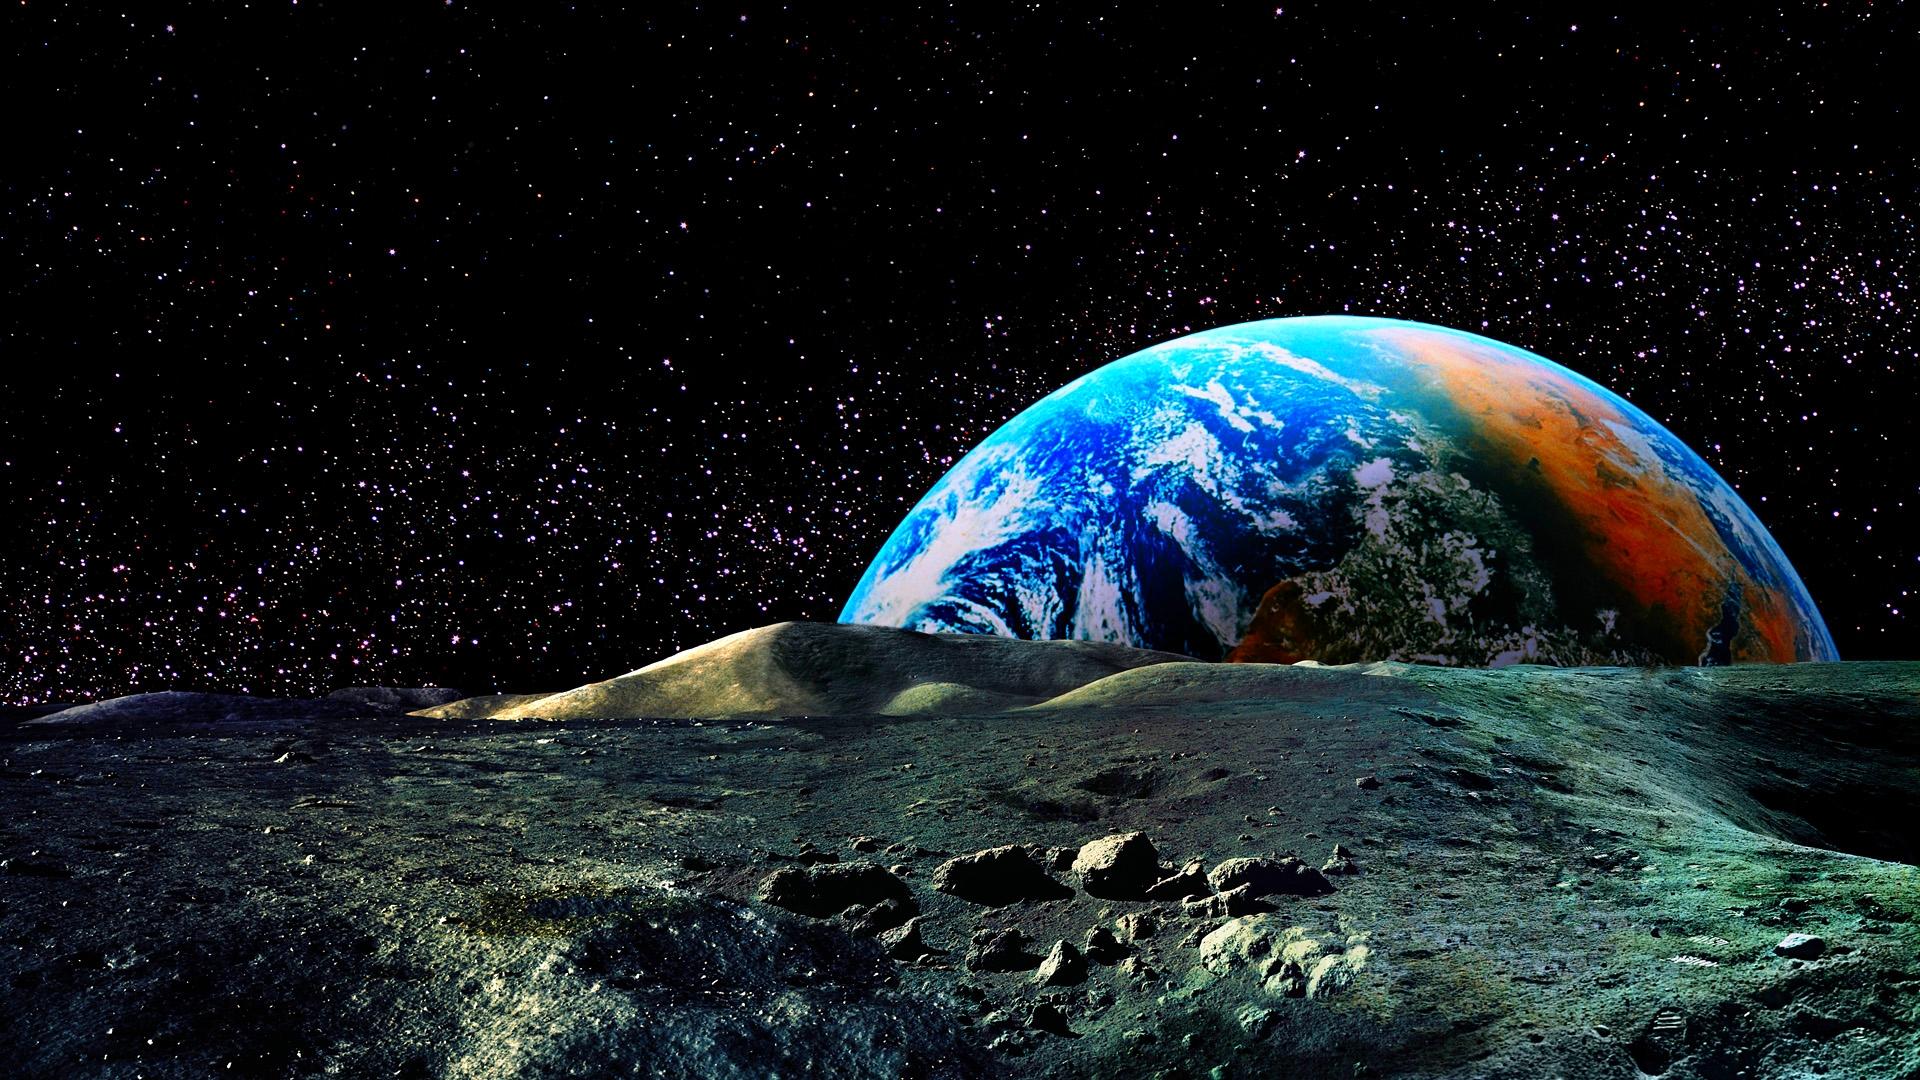 Beauty Of Earth wallpaper | space | Wallpaper Better